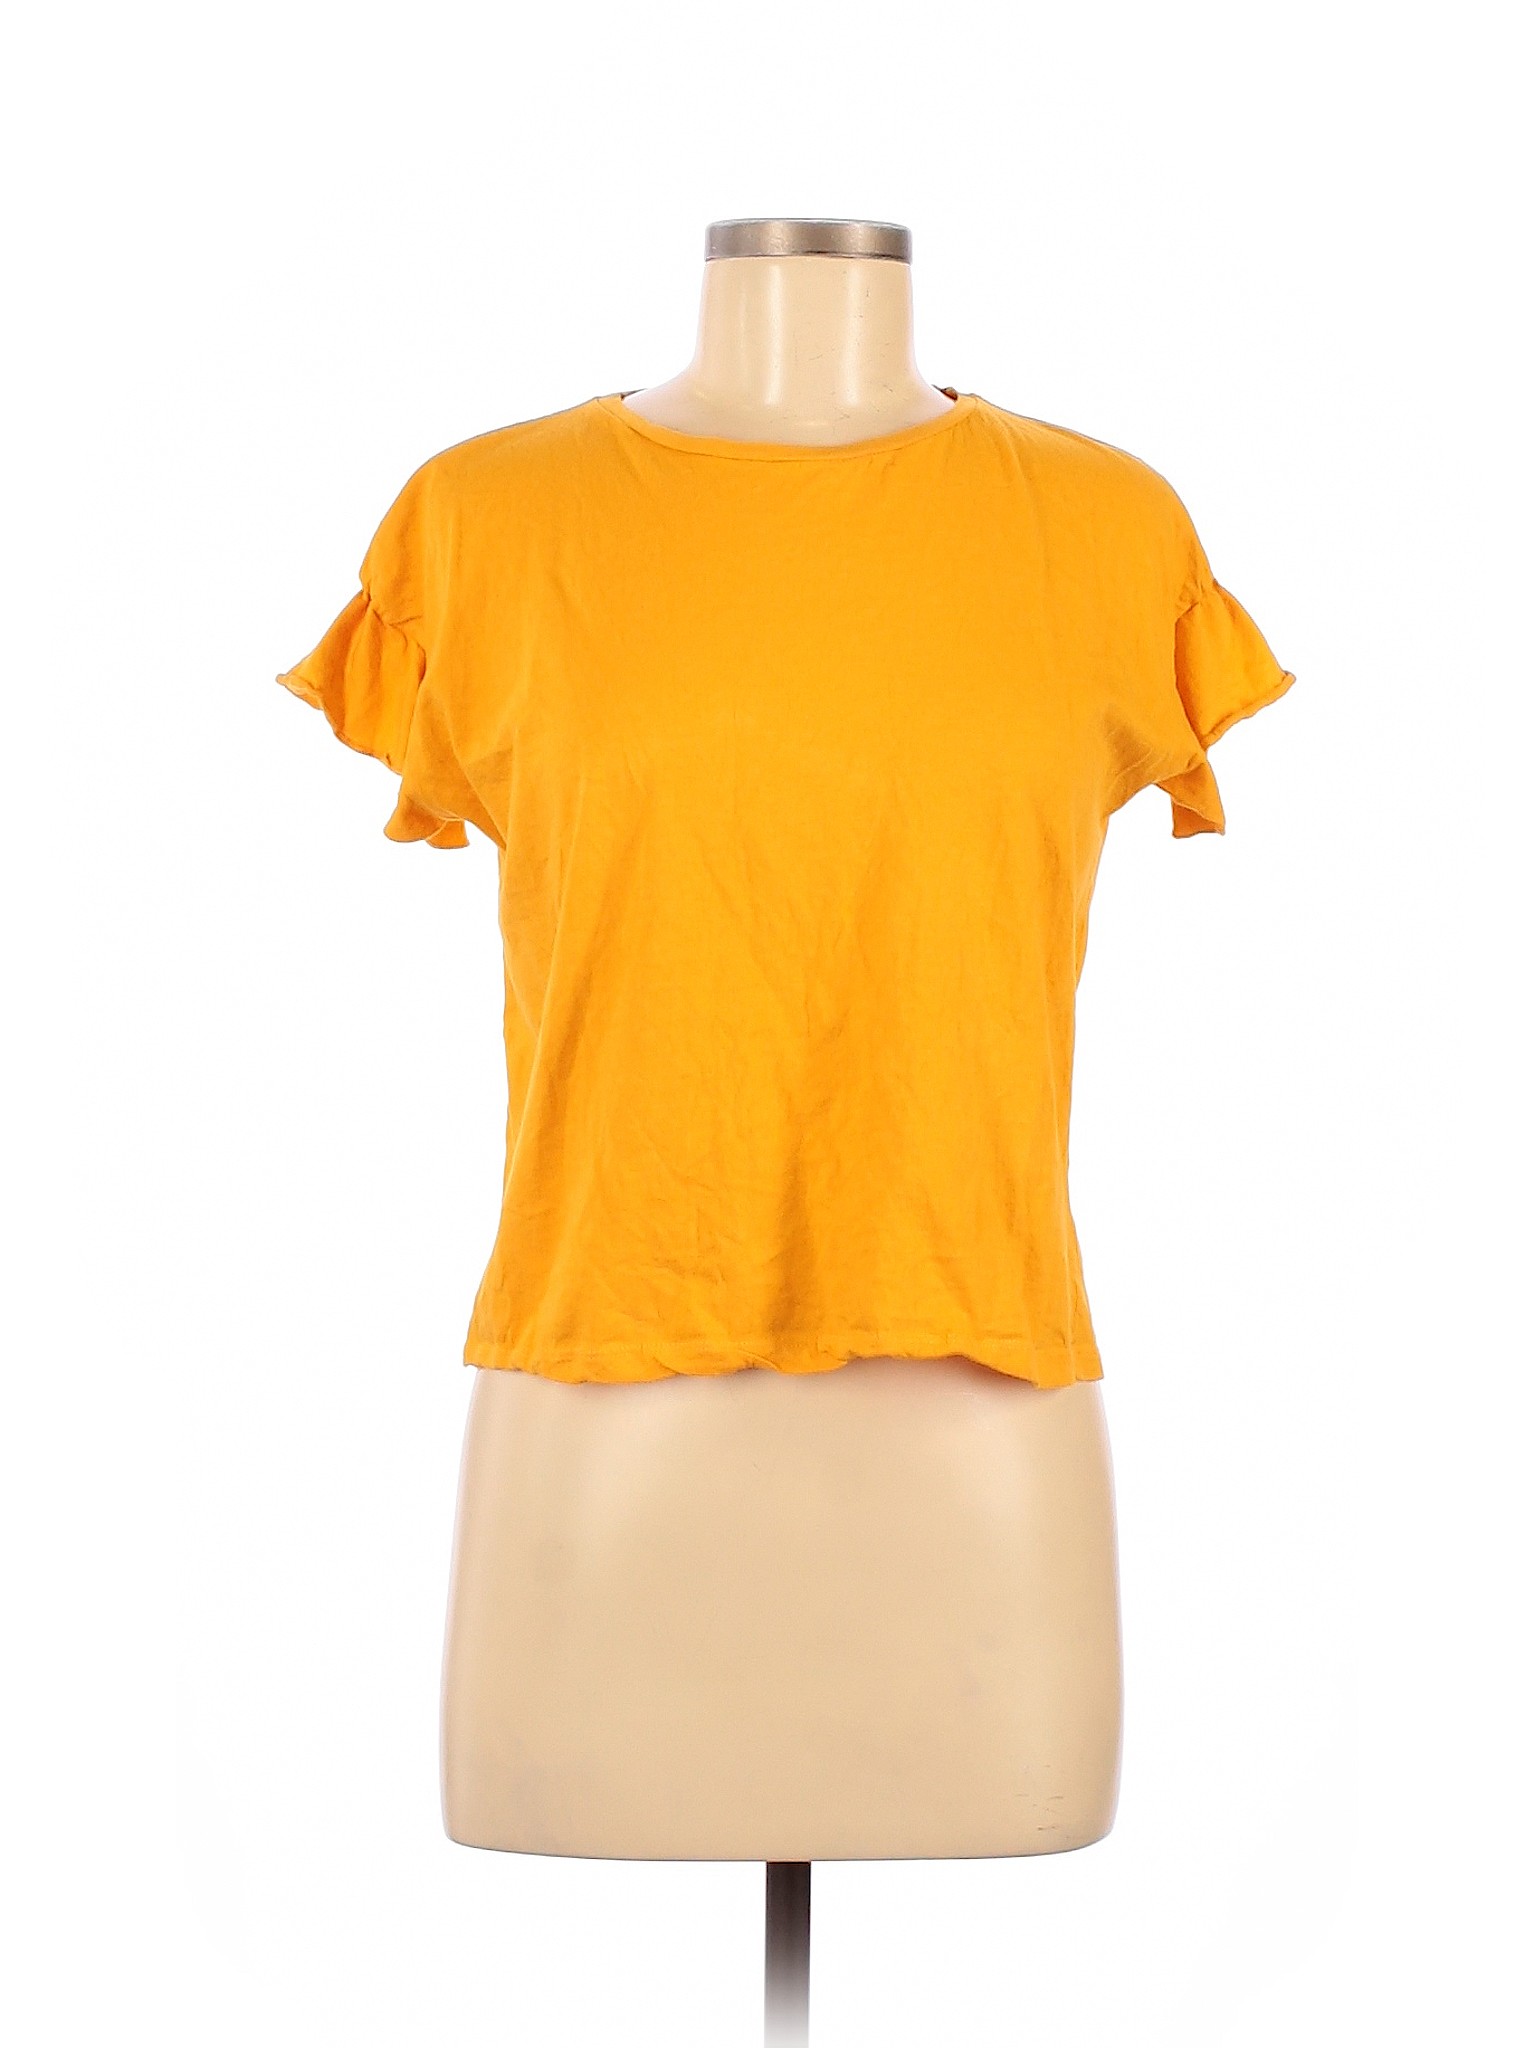 Zara TRF Women Yellow Short Sleeve T-Shirt S | eBay